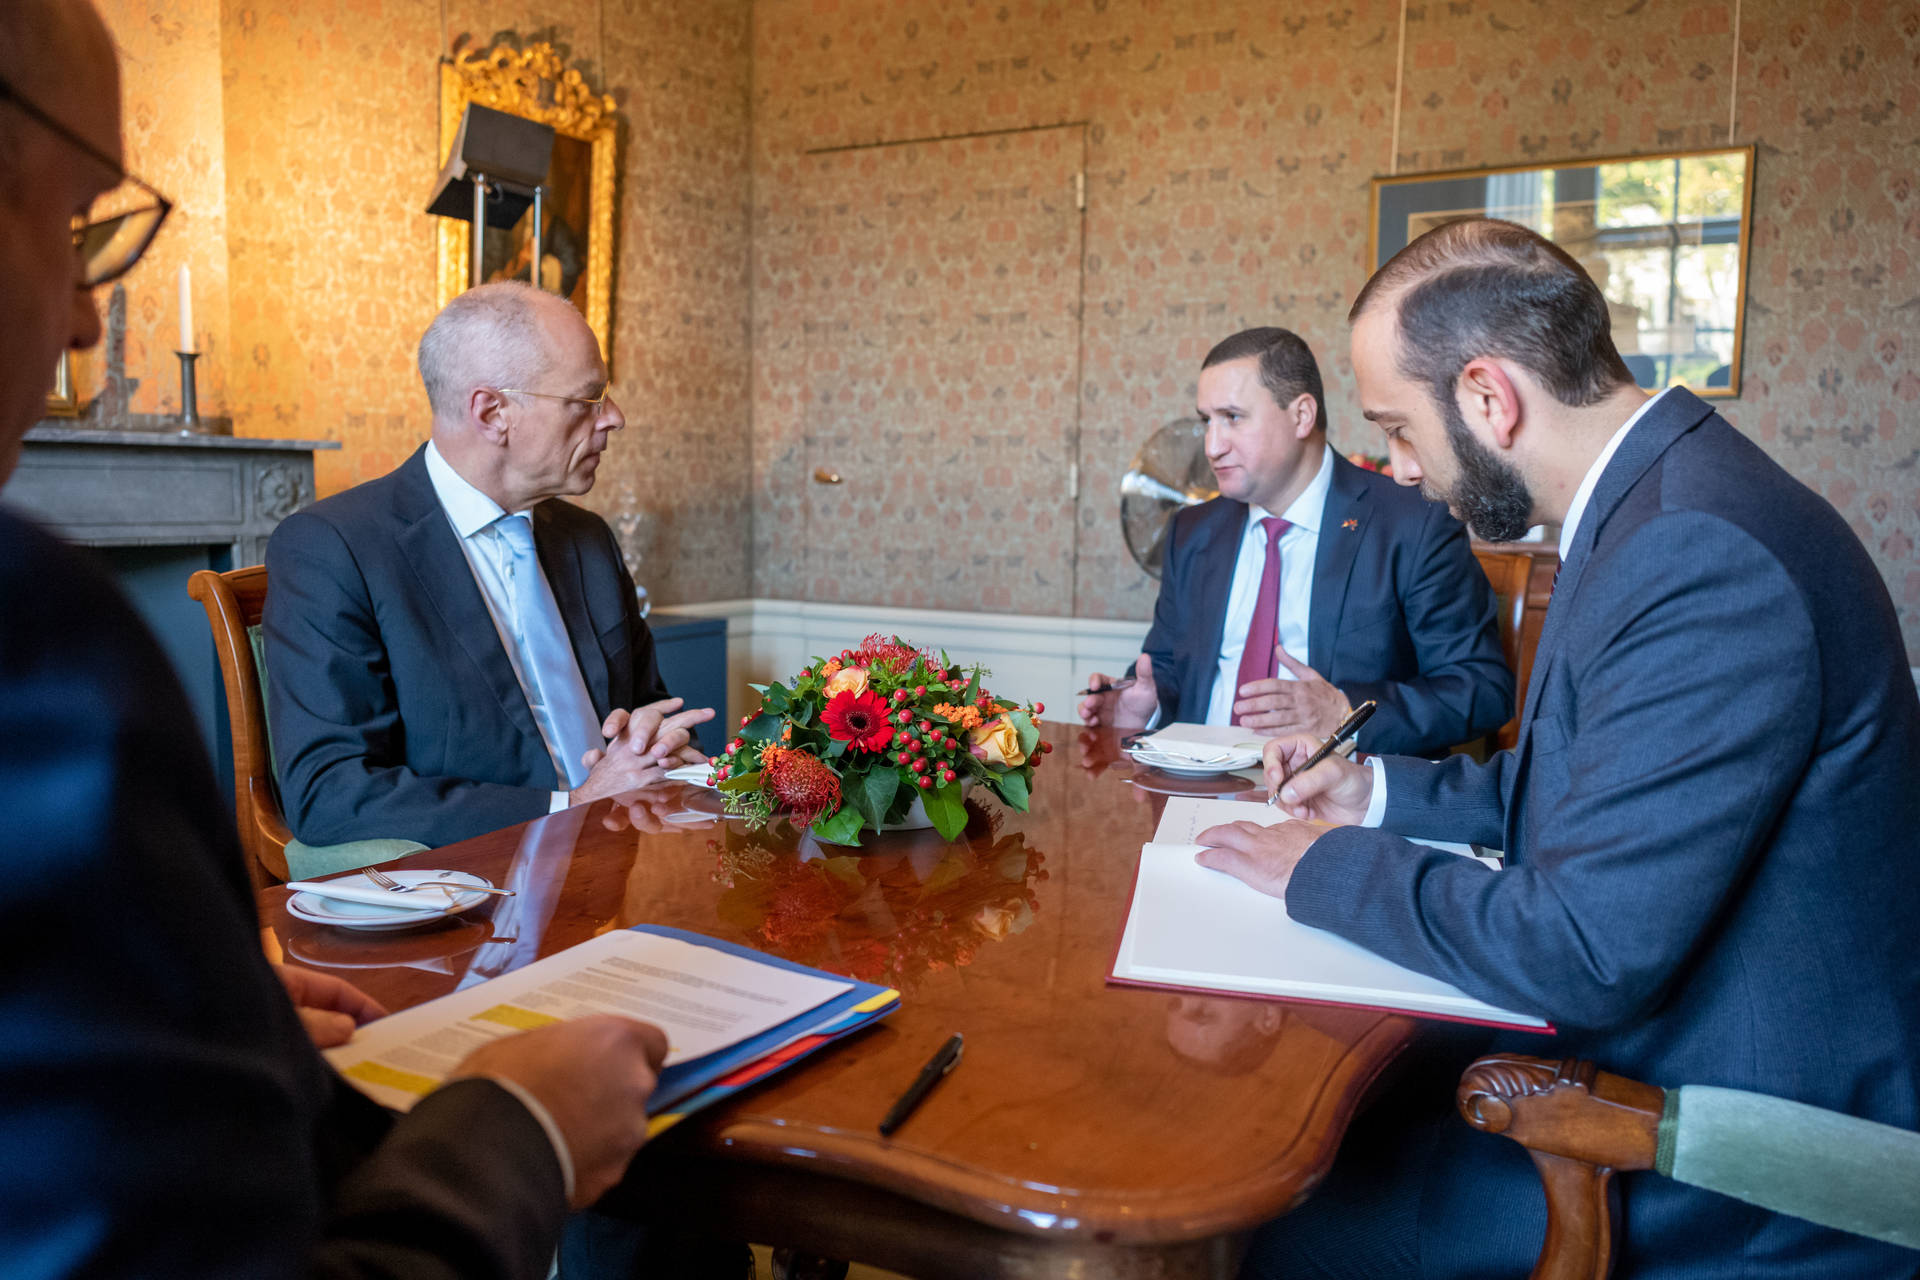 Armeense parlementsvoorzitter bezoekt Nederland